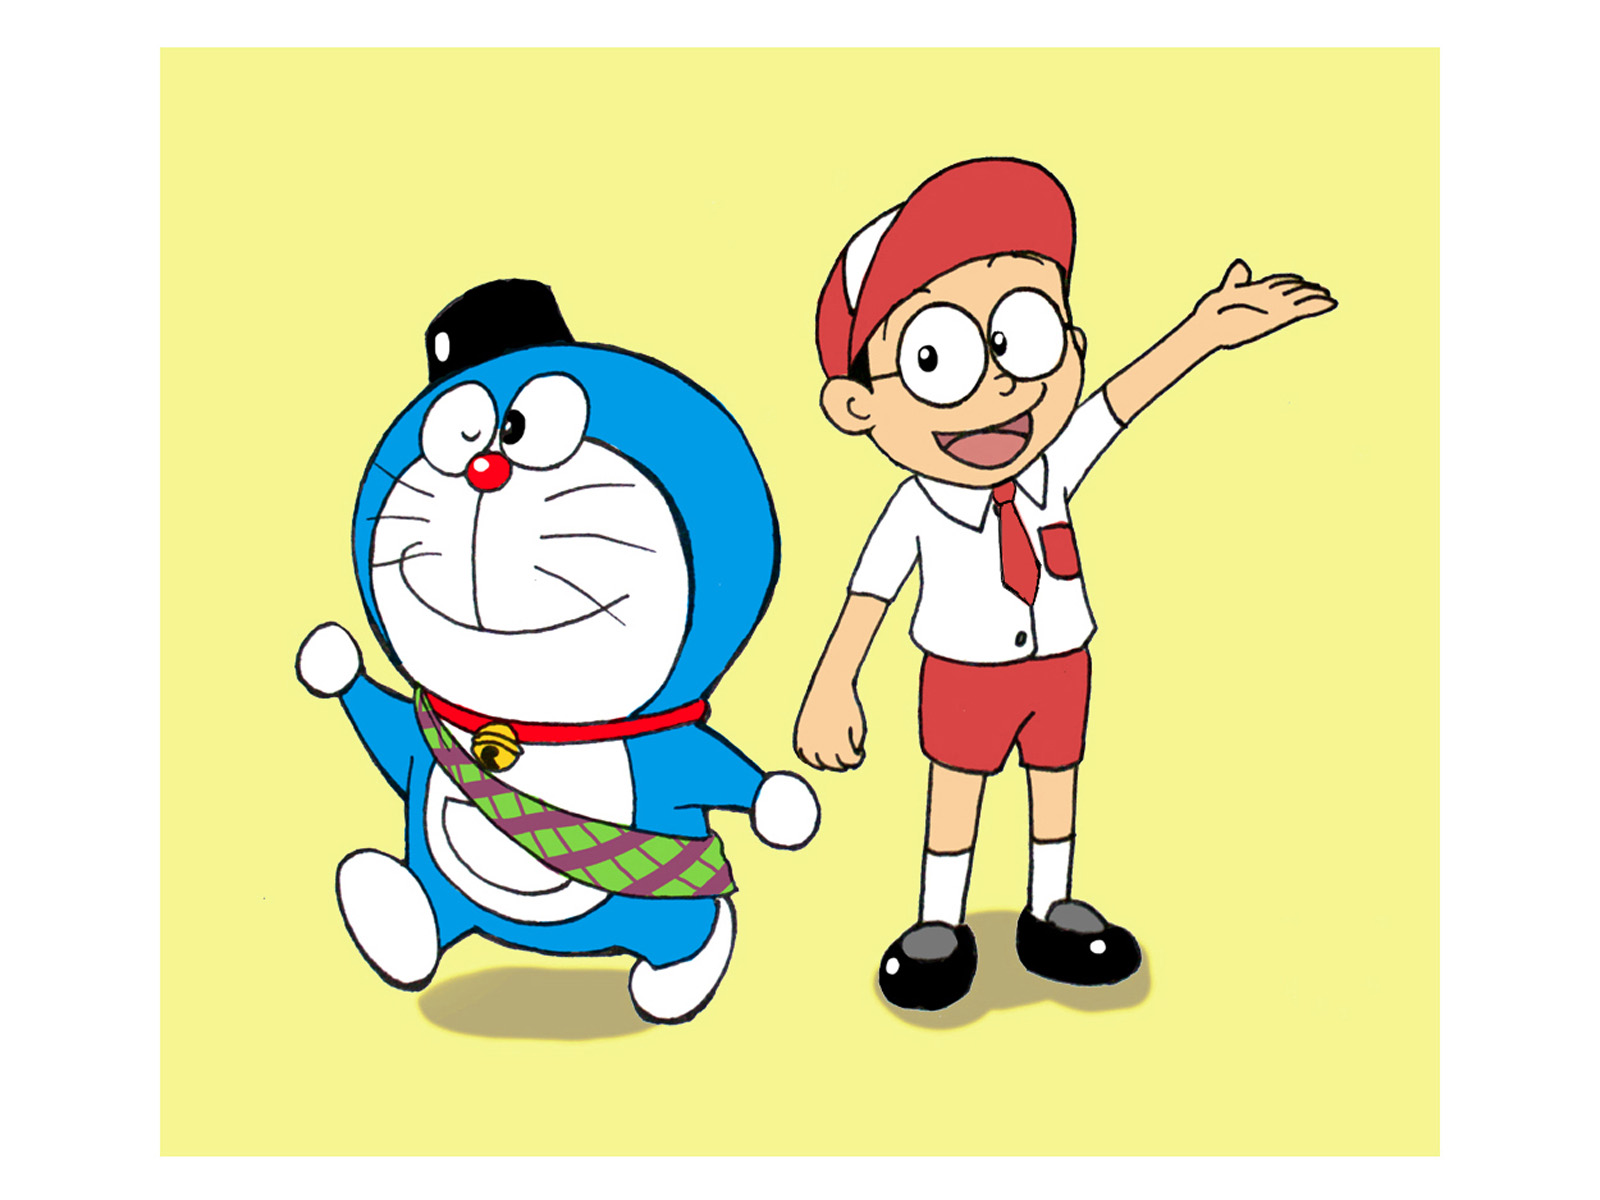  Wallpapers  Of Doraemon  WallpaperSafari